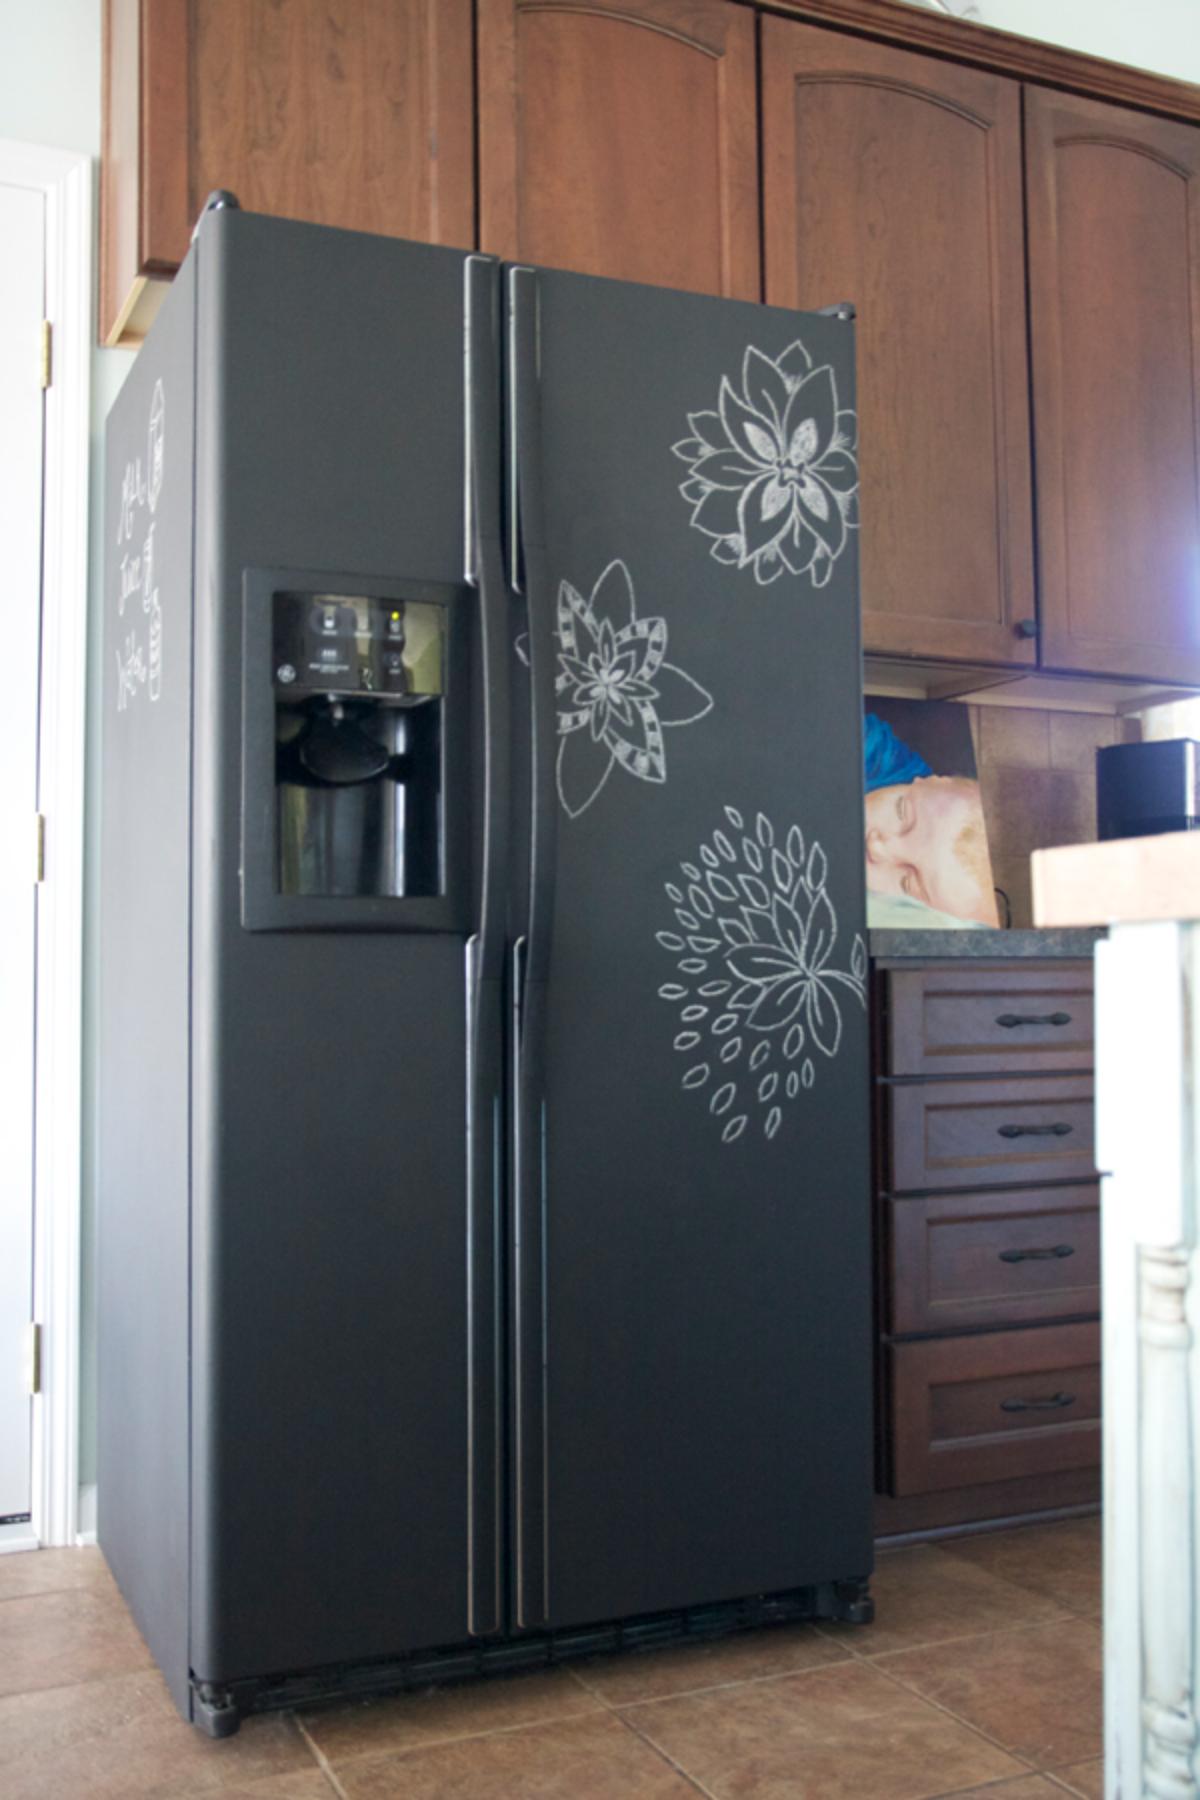 DIY chalkboard fridge.